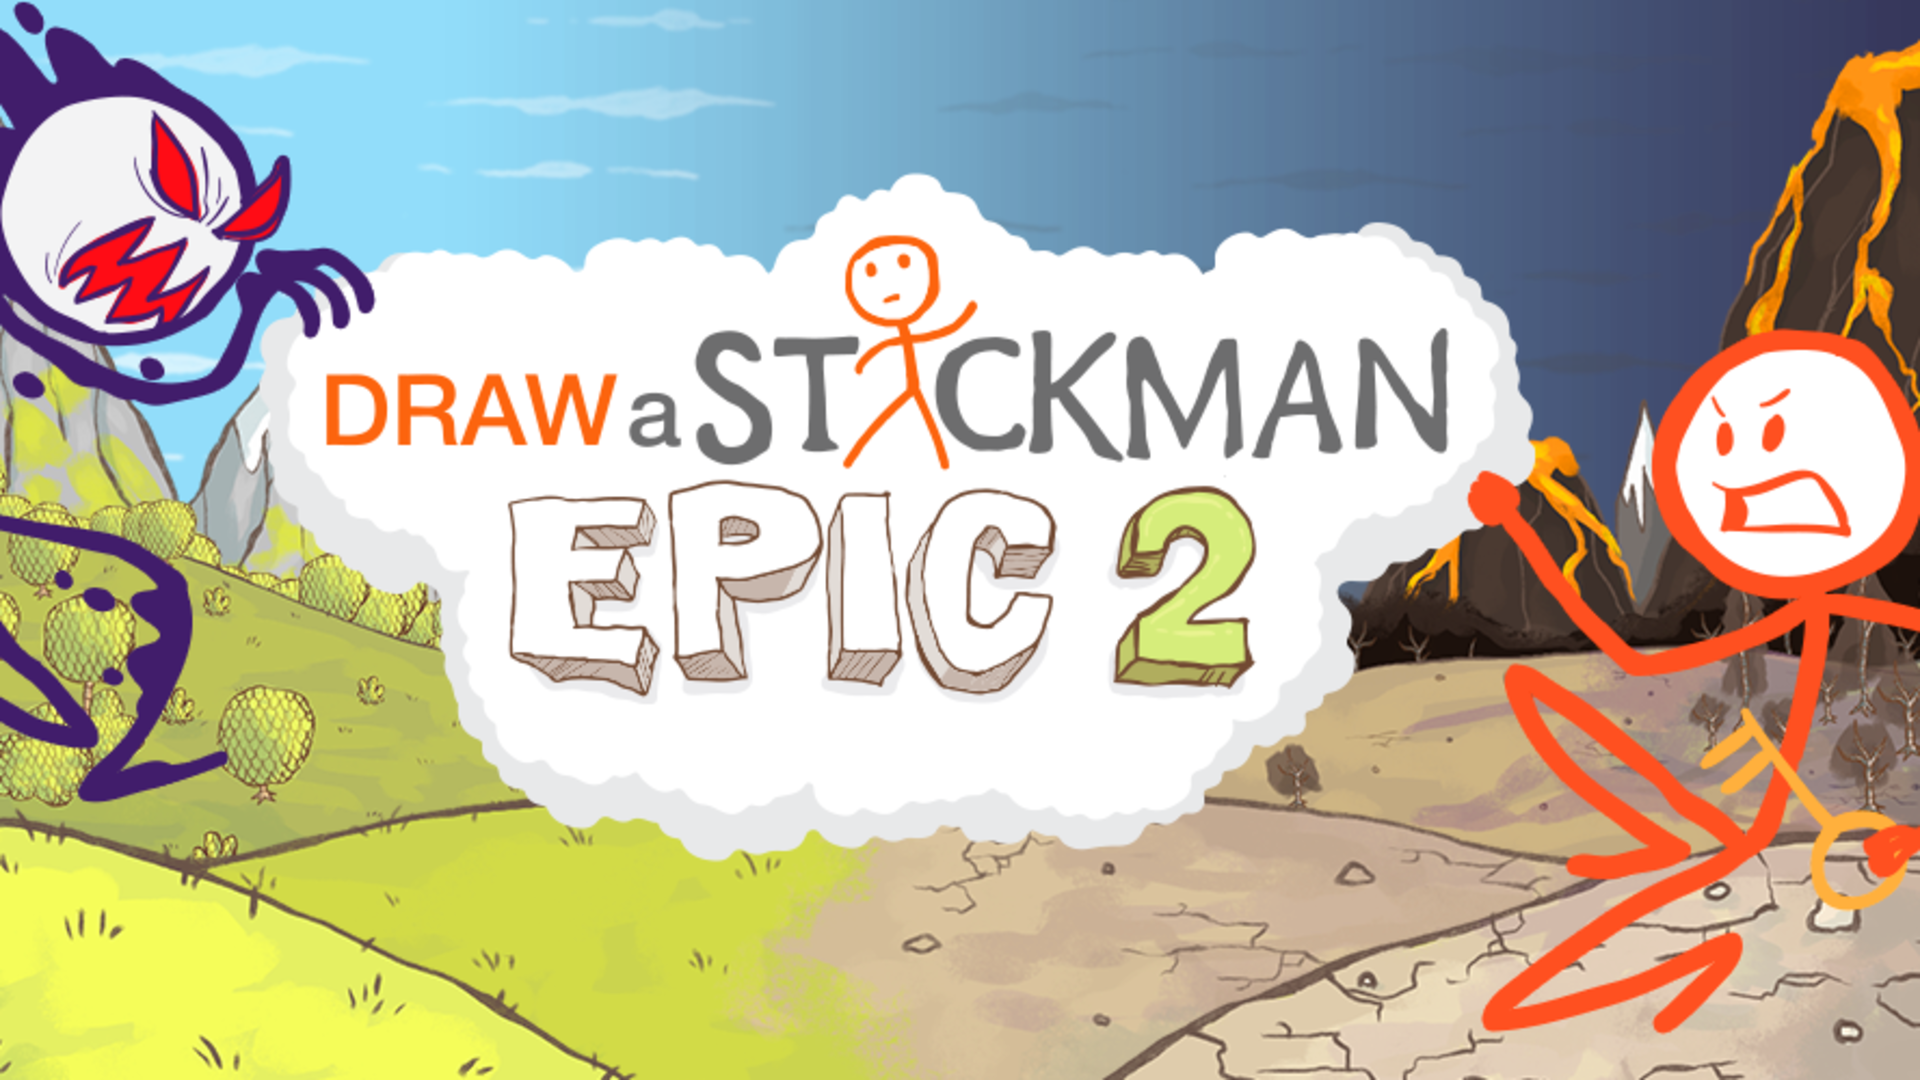 Banner of एक स्टिकमैन ड्रा करें: EPIC2 